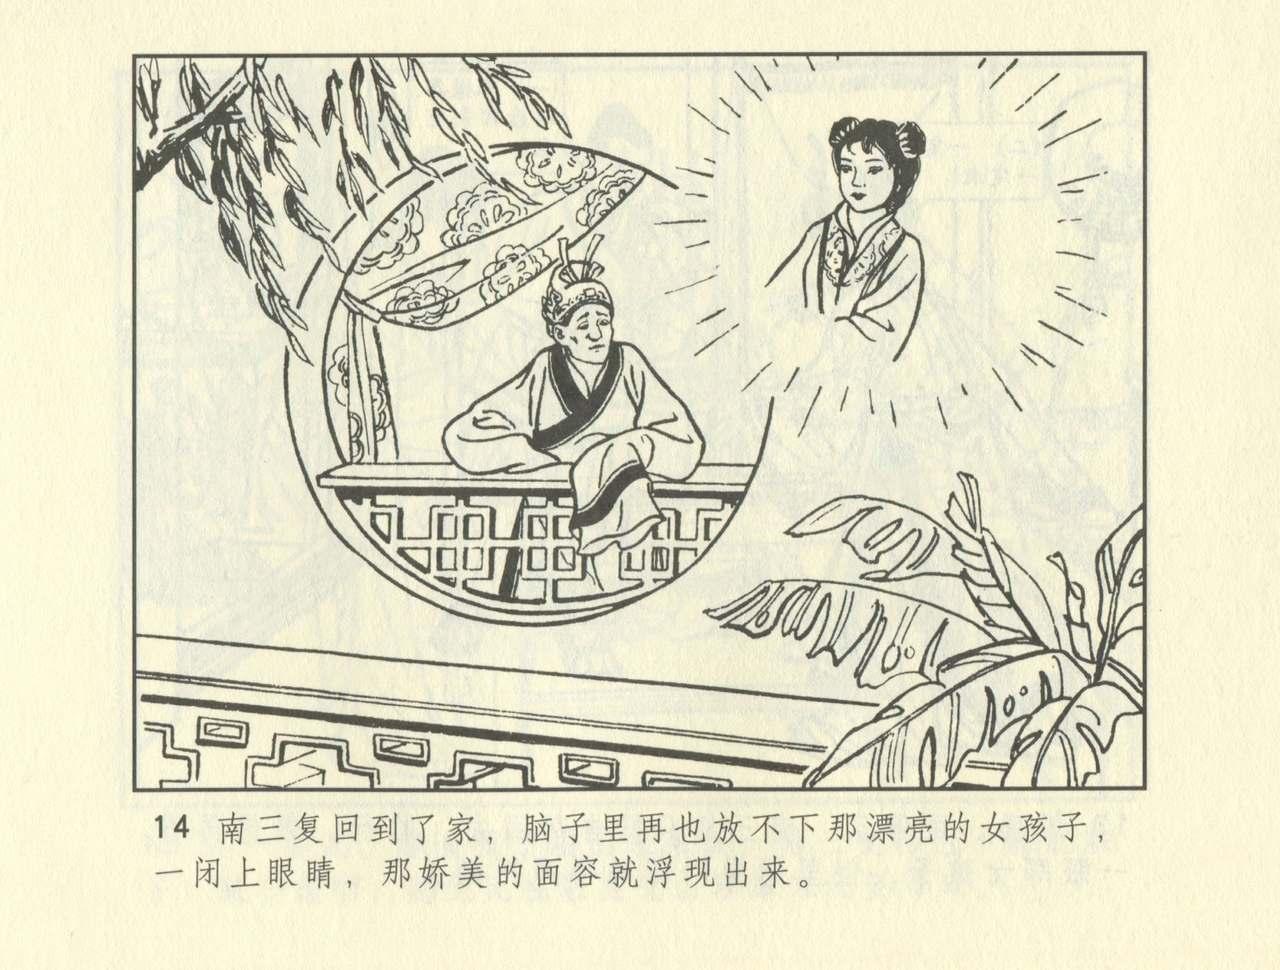 聊斋志异 张玮等绘 天津人民美术出版社 卷二十一 ~ 三十 223